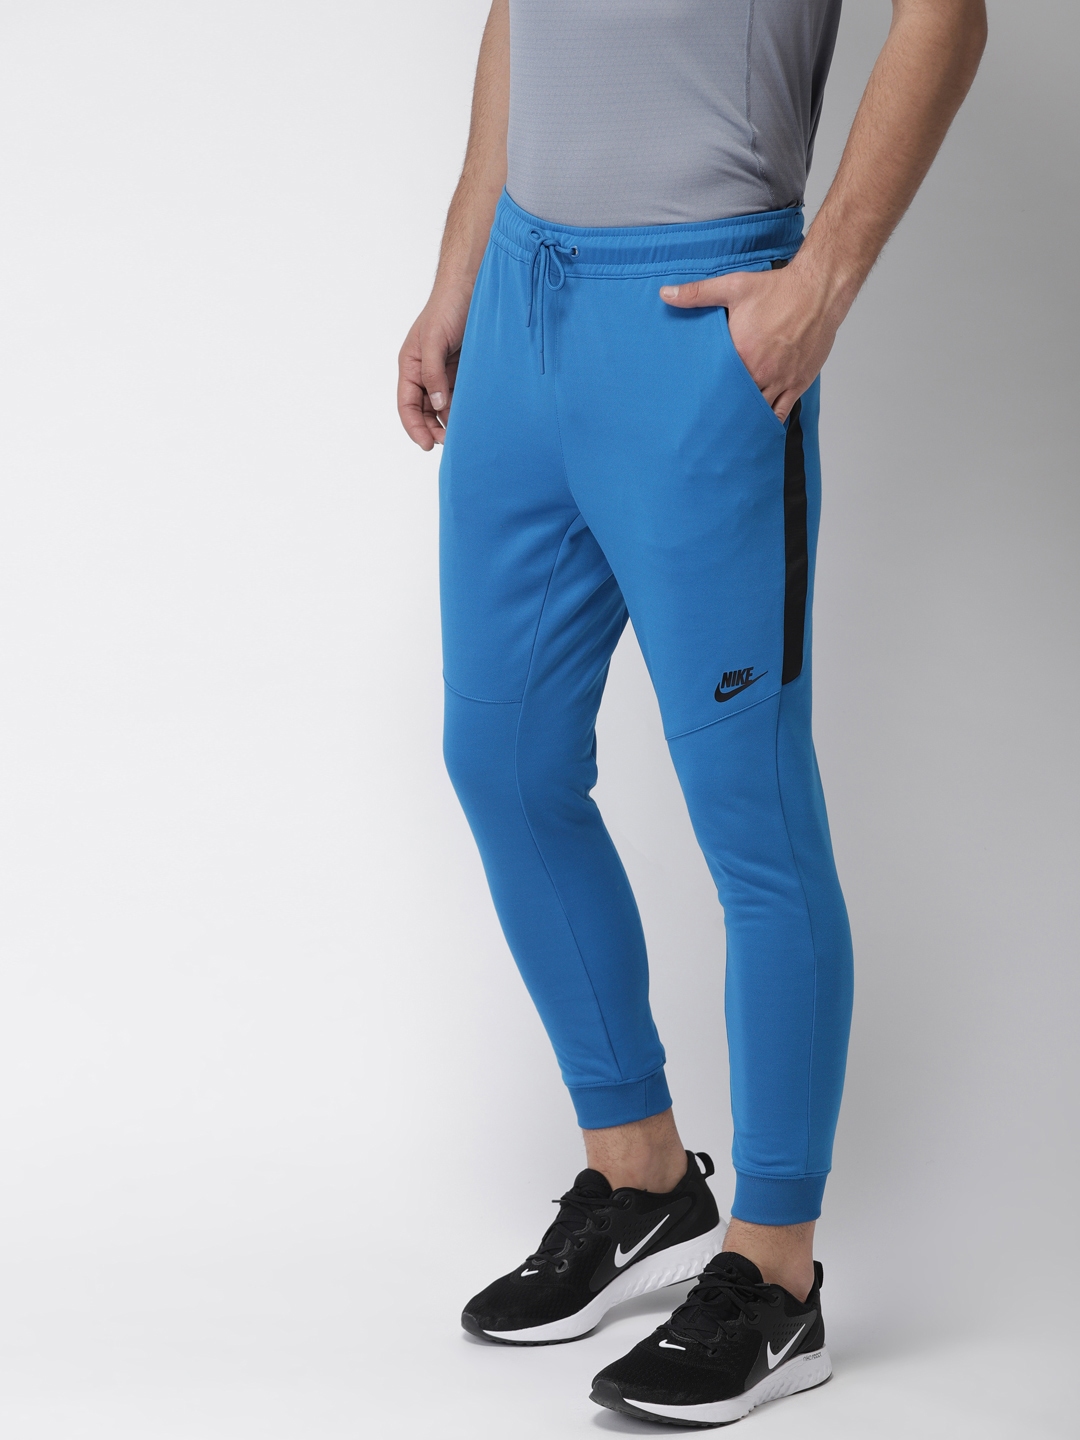 Buy Nike Men Blue Solid Slim Fit NSW PK 